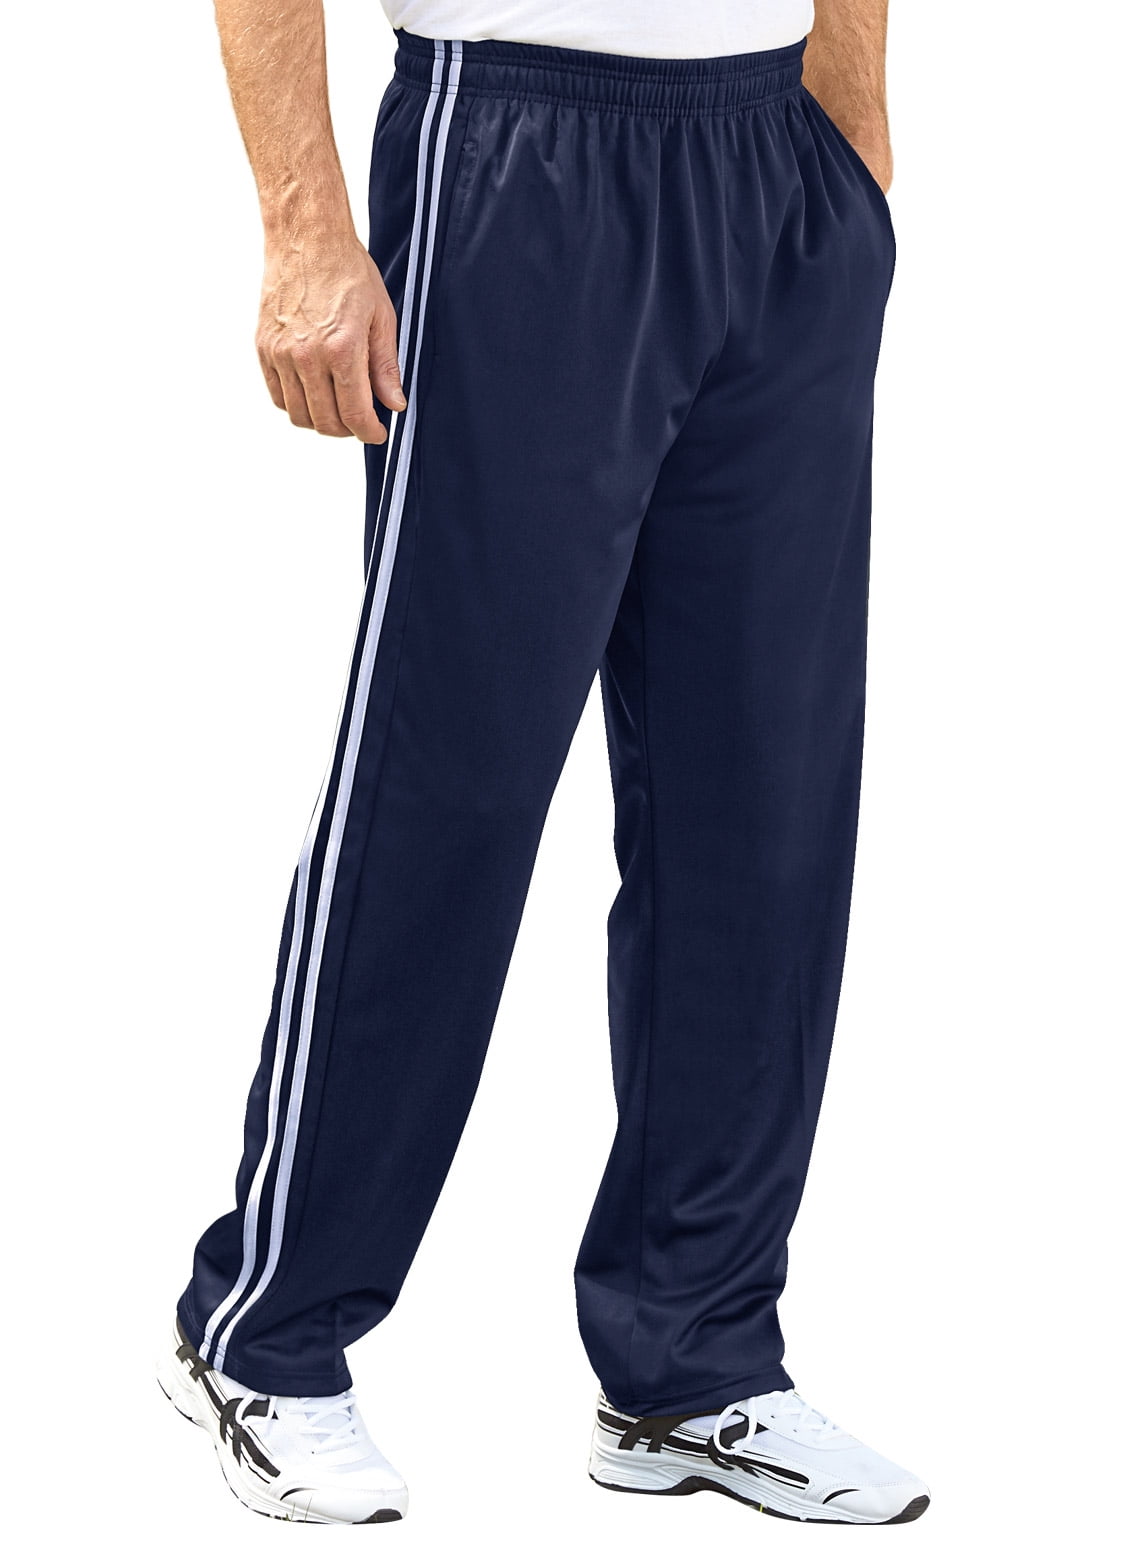 Men's Athletic Pants - Walmart.com